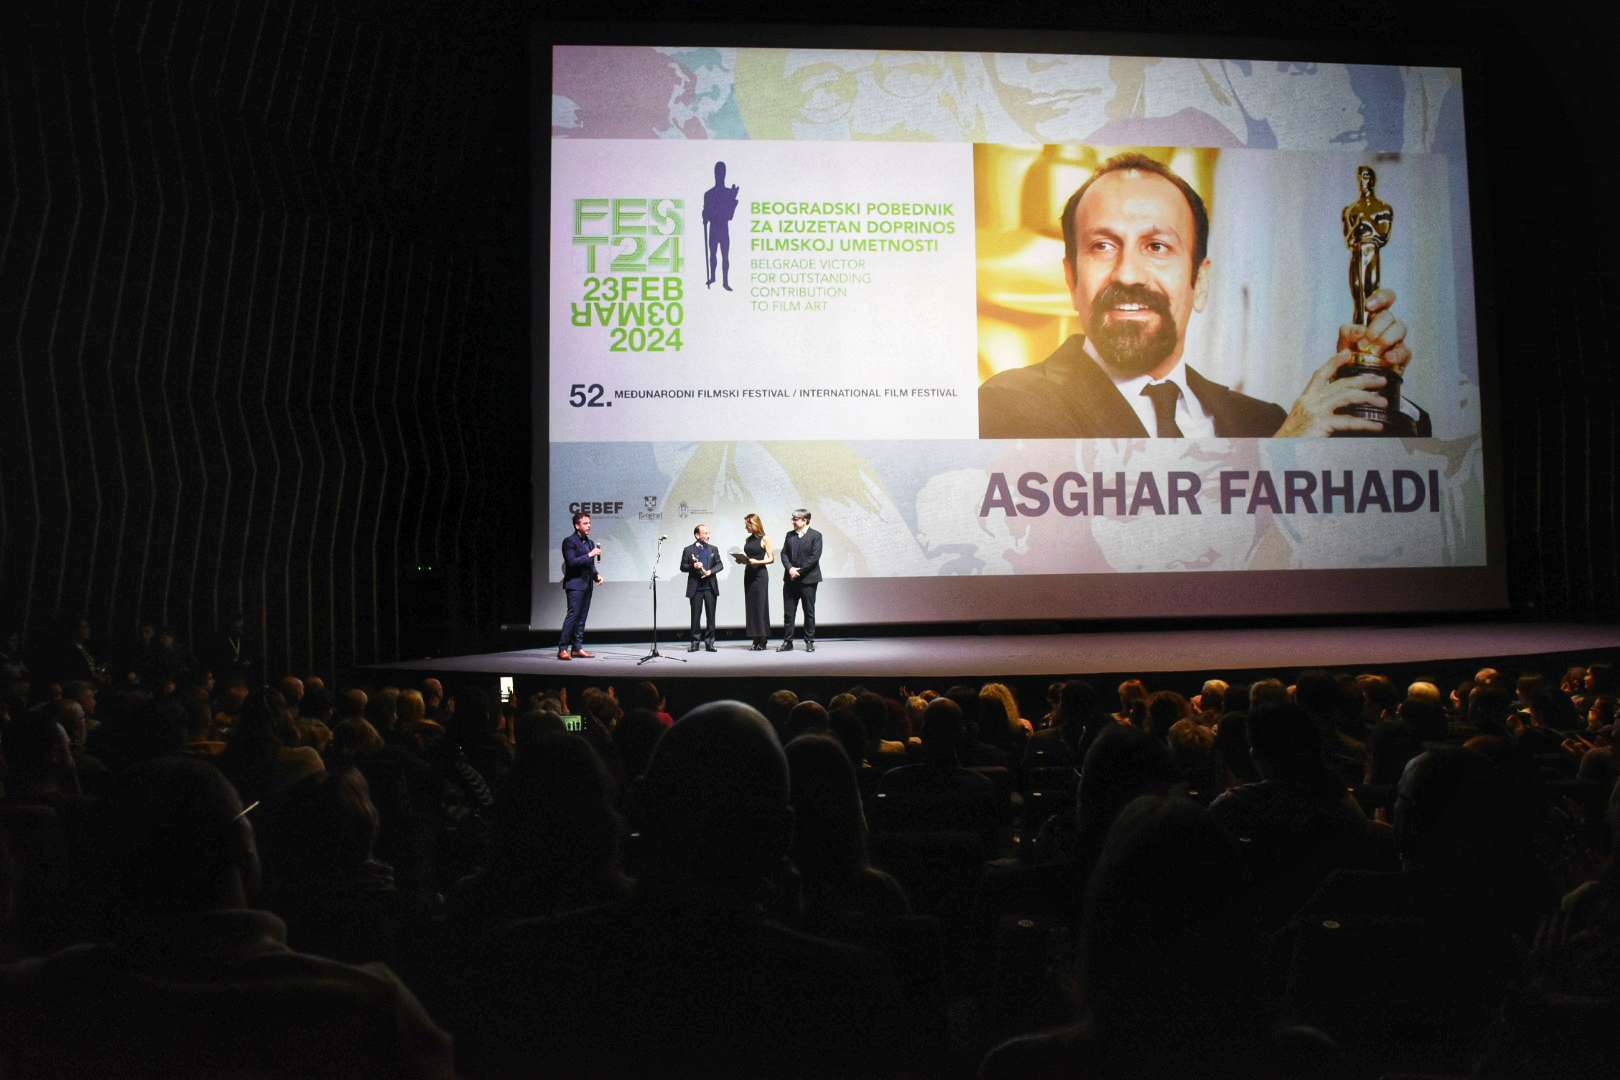 Velika je čast dobiti "Beogradskog pobednika", i vrlo emotivno, pamtiću ovo veče: Ašgaru Farhadiju, dvostrukom oskarovcu, uručena nagrada Festa 2